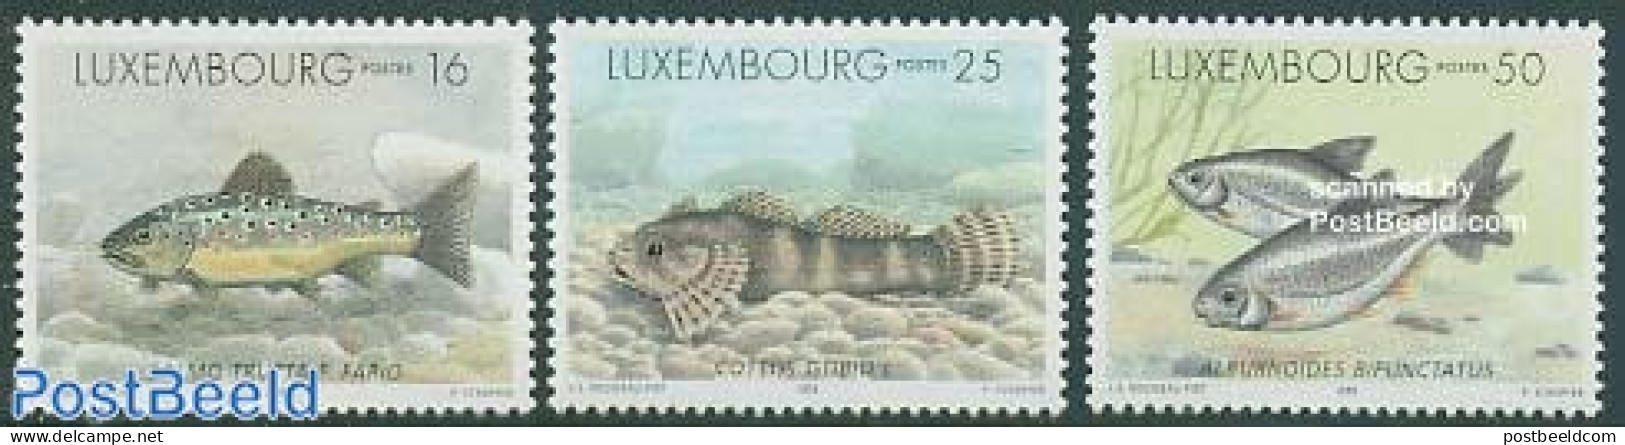 Luxemburg 1998 Fish 3v, Mint NH, Nature - Fish - Ongebruikt